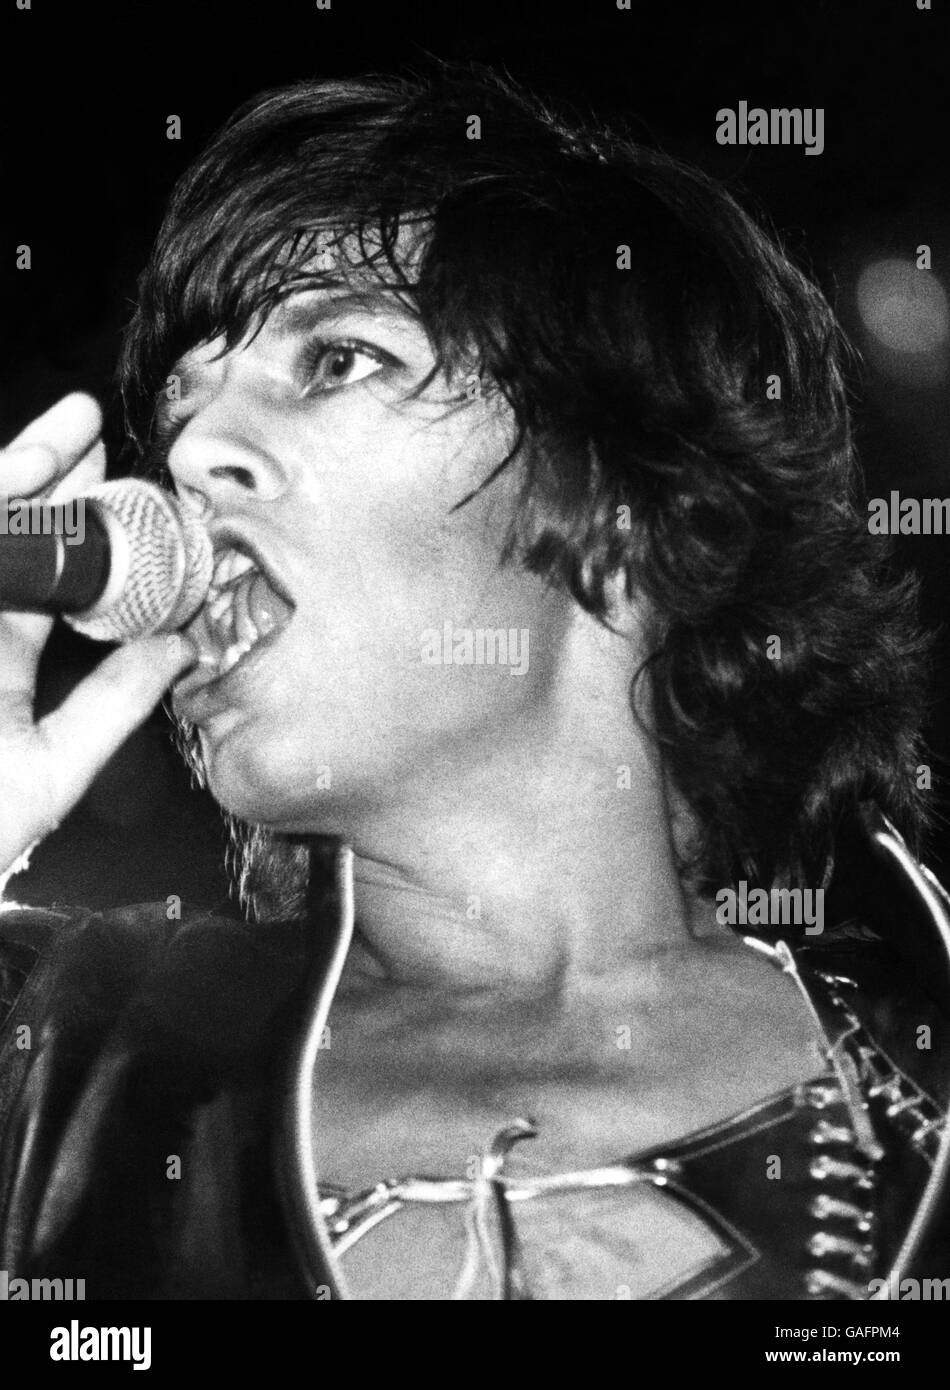 Musica - The Rolling Stones - Londra. Mick Jagger of the Rolling Stones si esibisce durante un concerto presso l'Empire Pool di Wembley Foto Stock